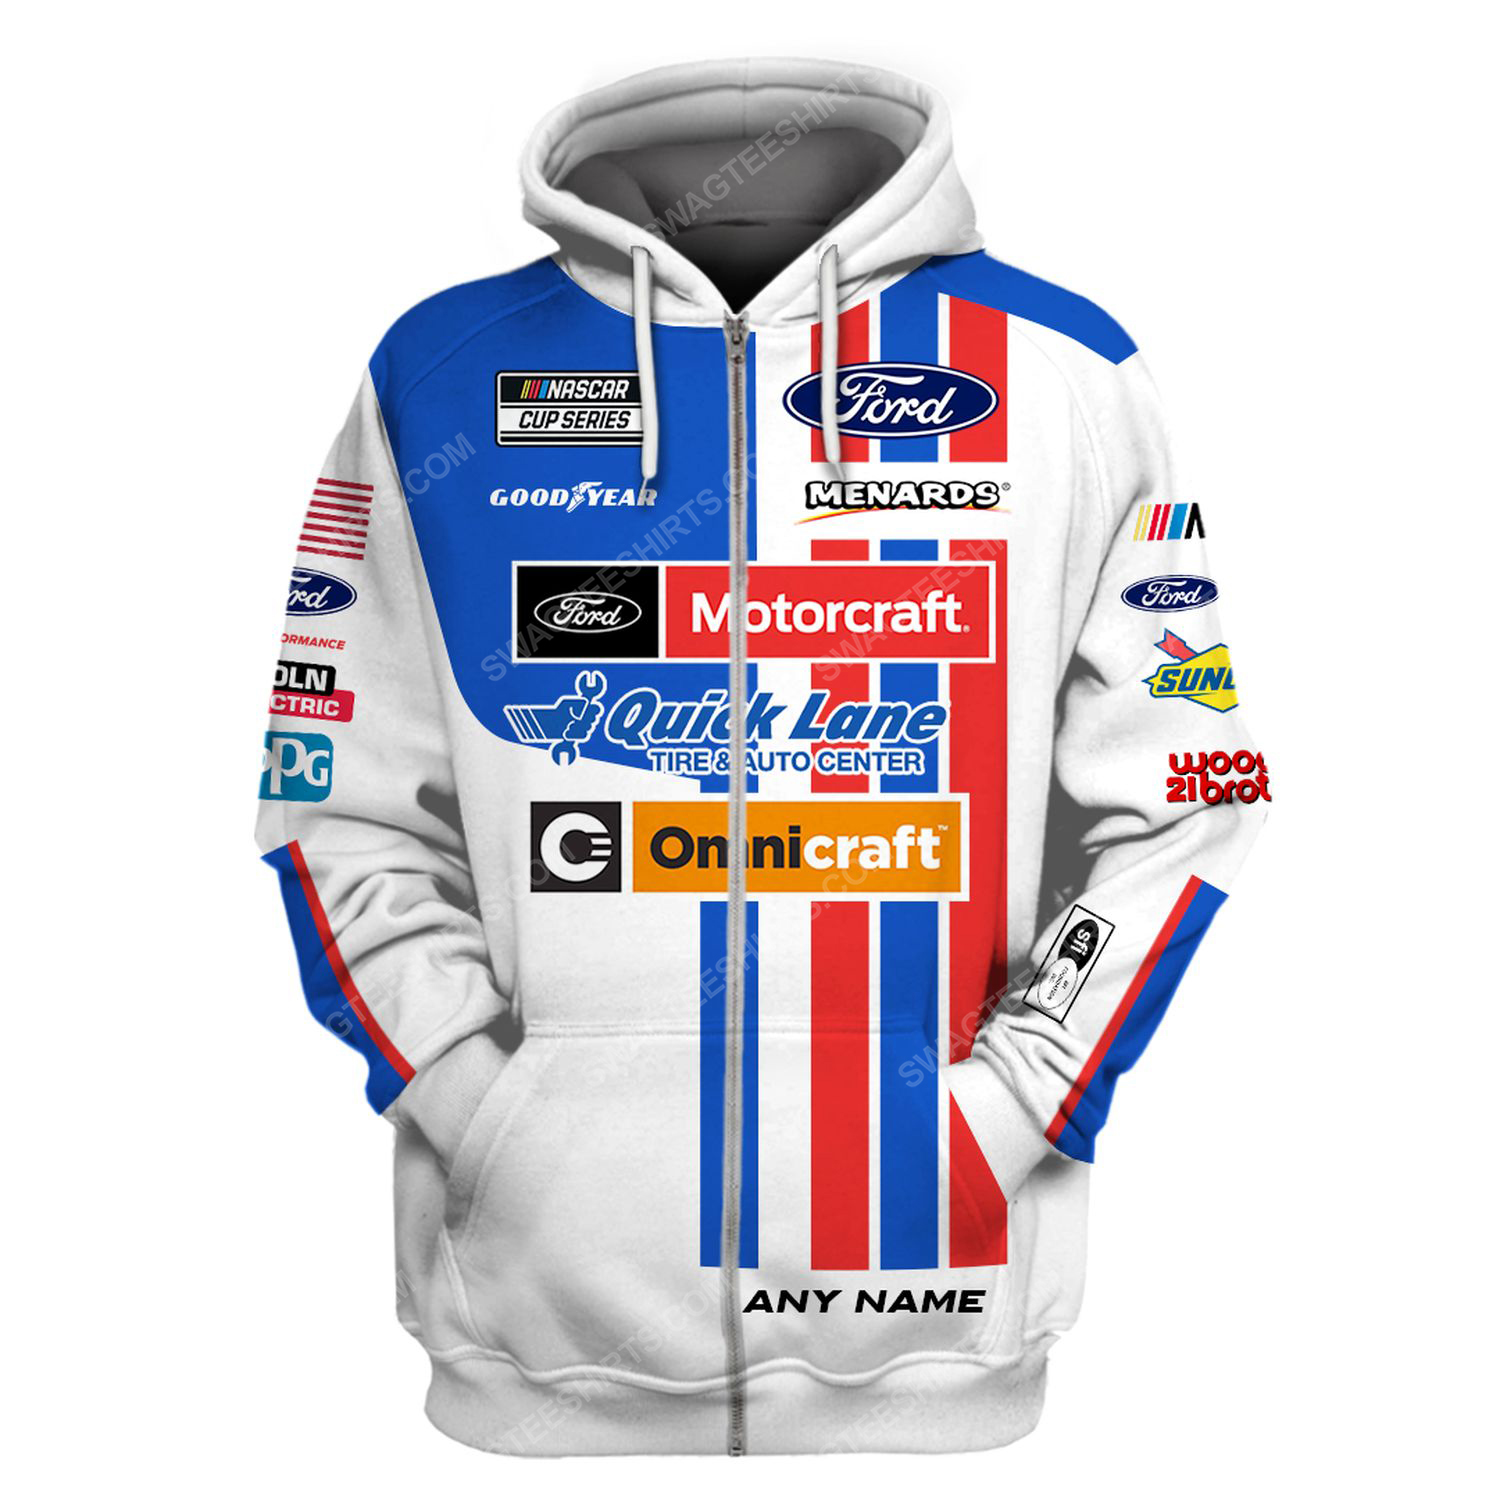 Custom motorcraft racing team motorsport full printing zip hoodie